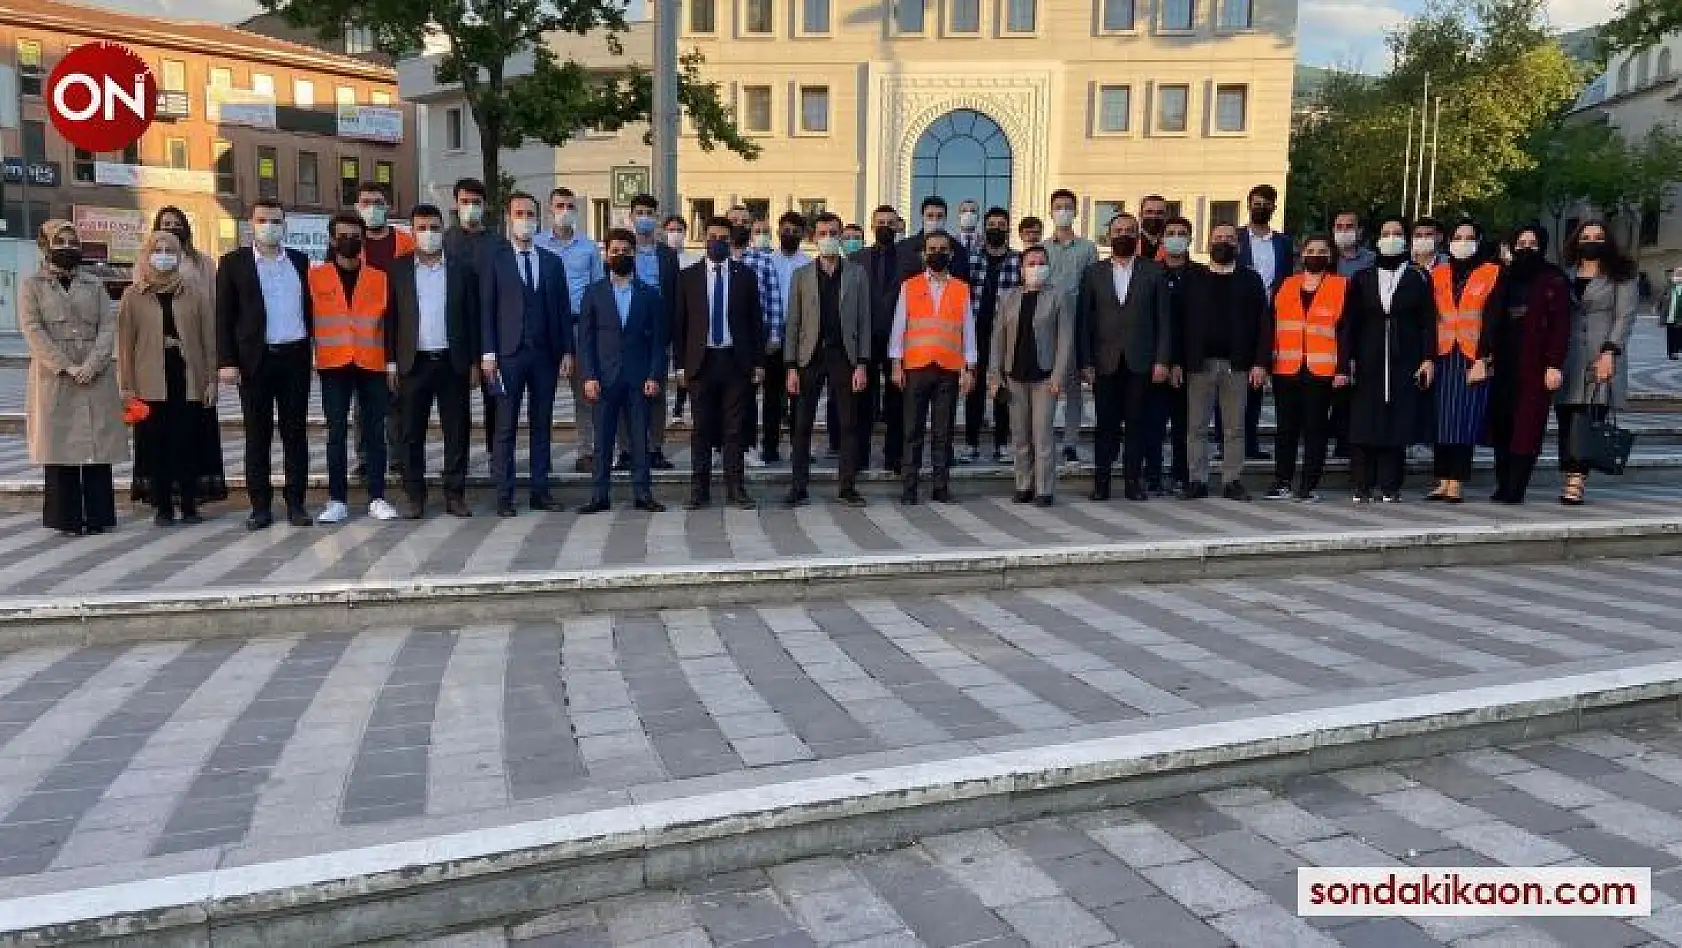 AK gençler Bursaspor'un 58. yaş coşkusunu vatandaşlarla paylaştı